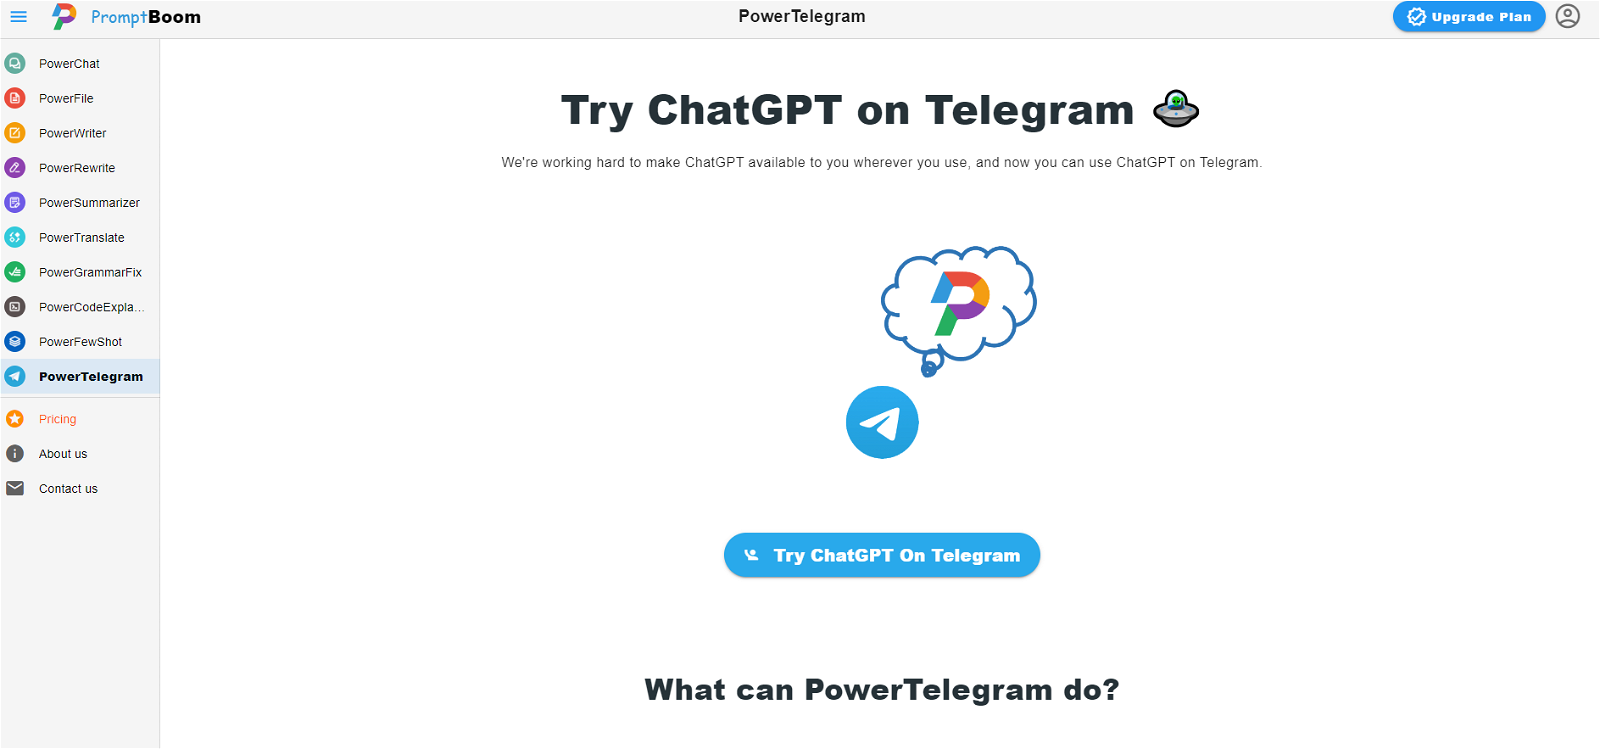 PowerTelegram website